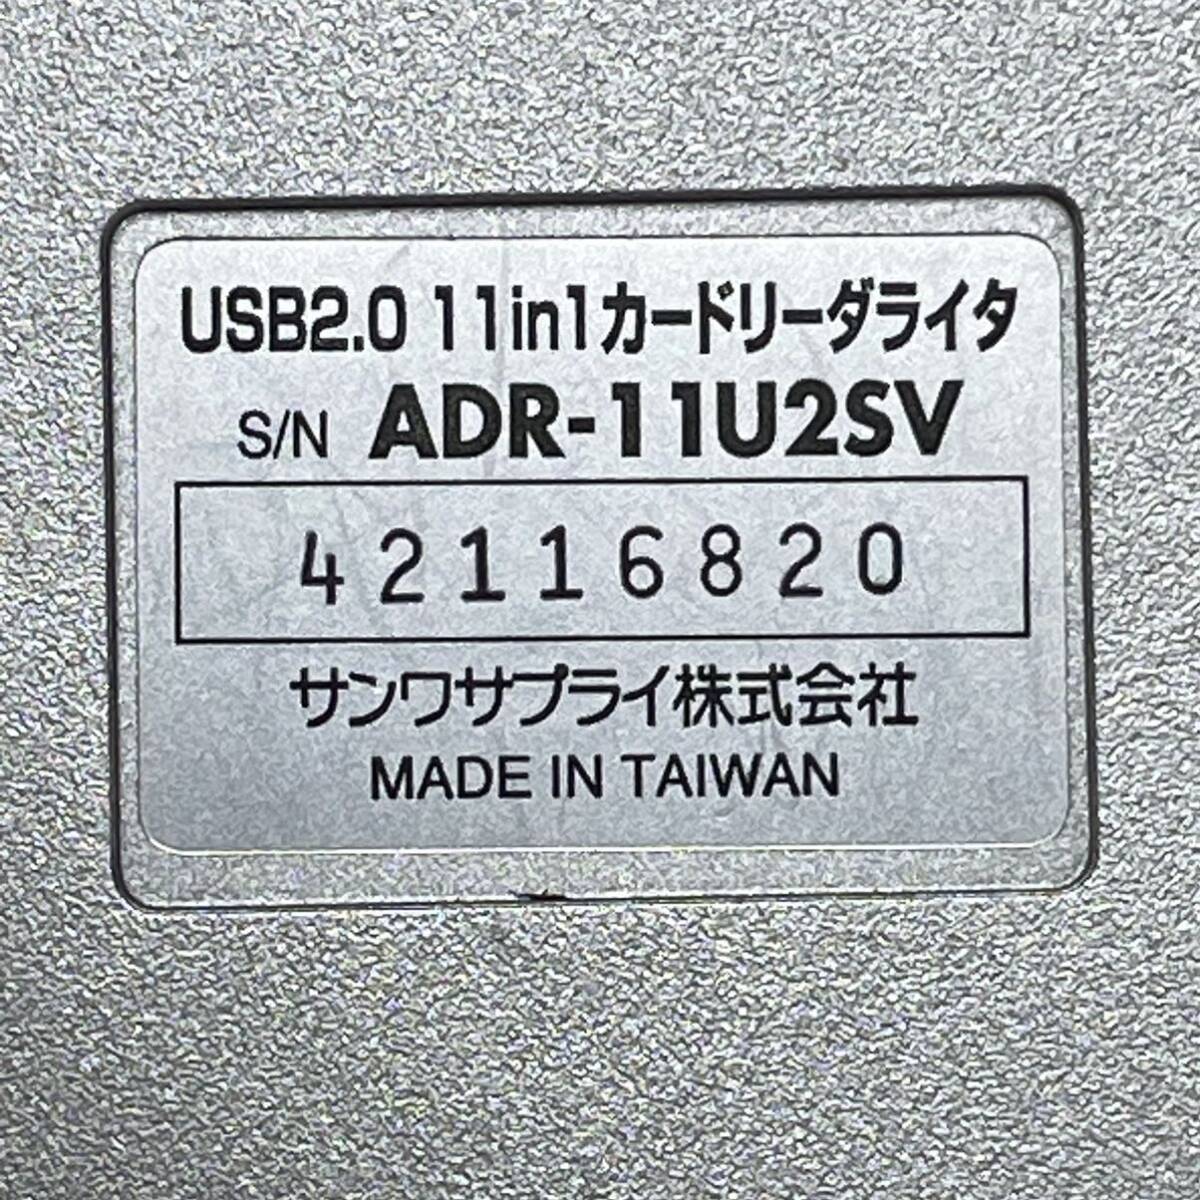 サンワサプライ USB2.0 11in1カードリーダライタ ADR-11U2SV CF/Microdrive/SM/xD/SD/MMC/MS/MSPro (USB接続/スマートメディア)の画像4